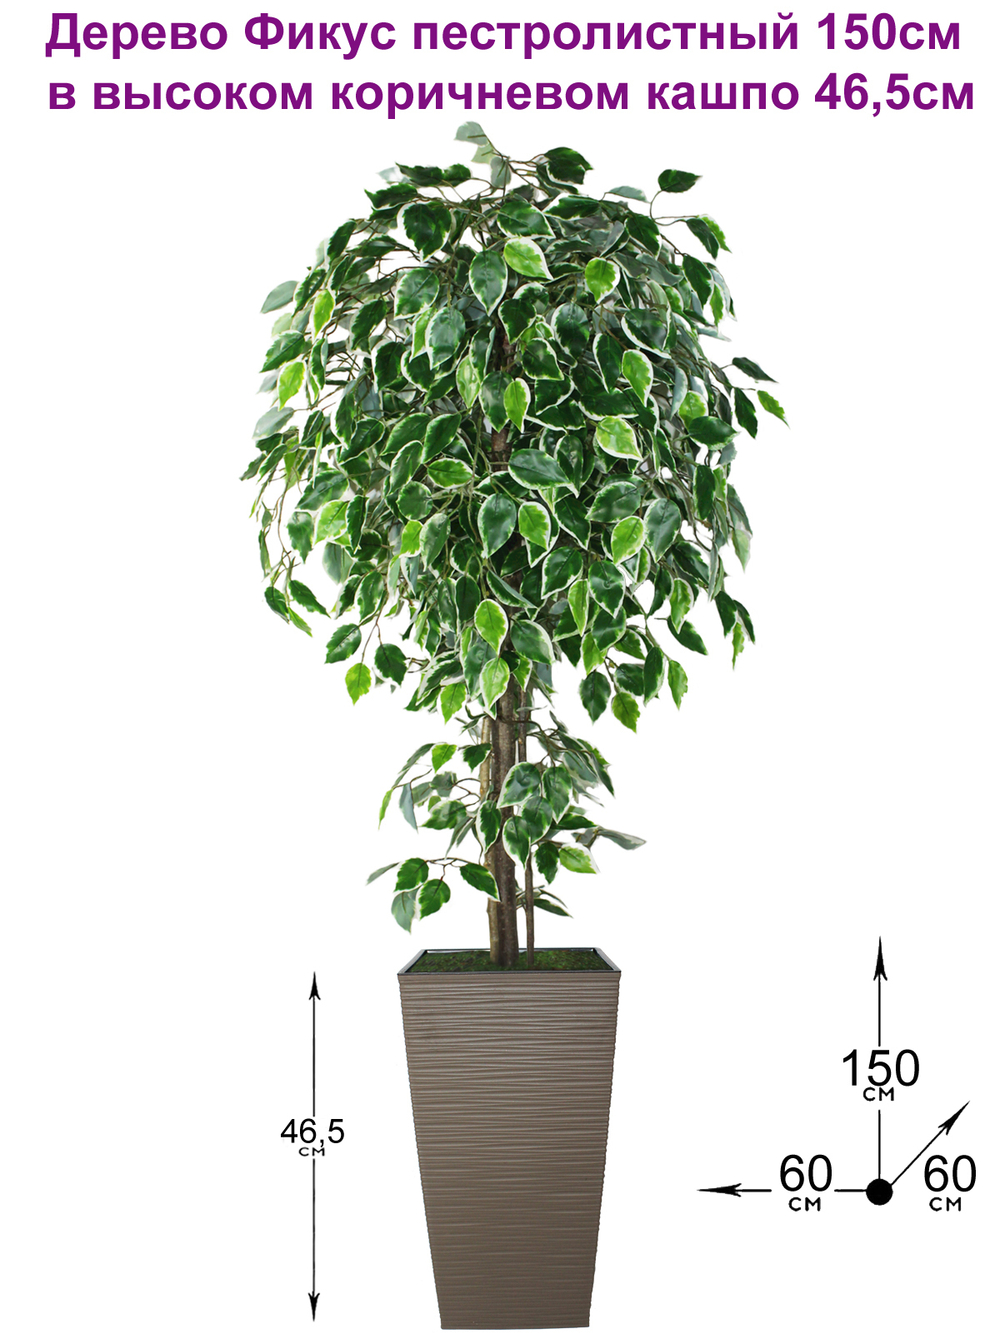 Искусственное дерево Фикус пестролистный 150см в высоком коричневом кашпо 46 см